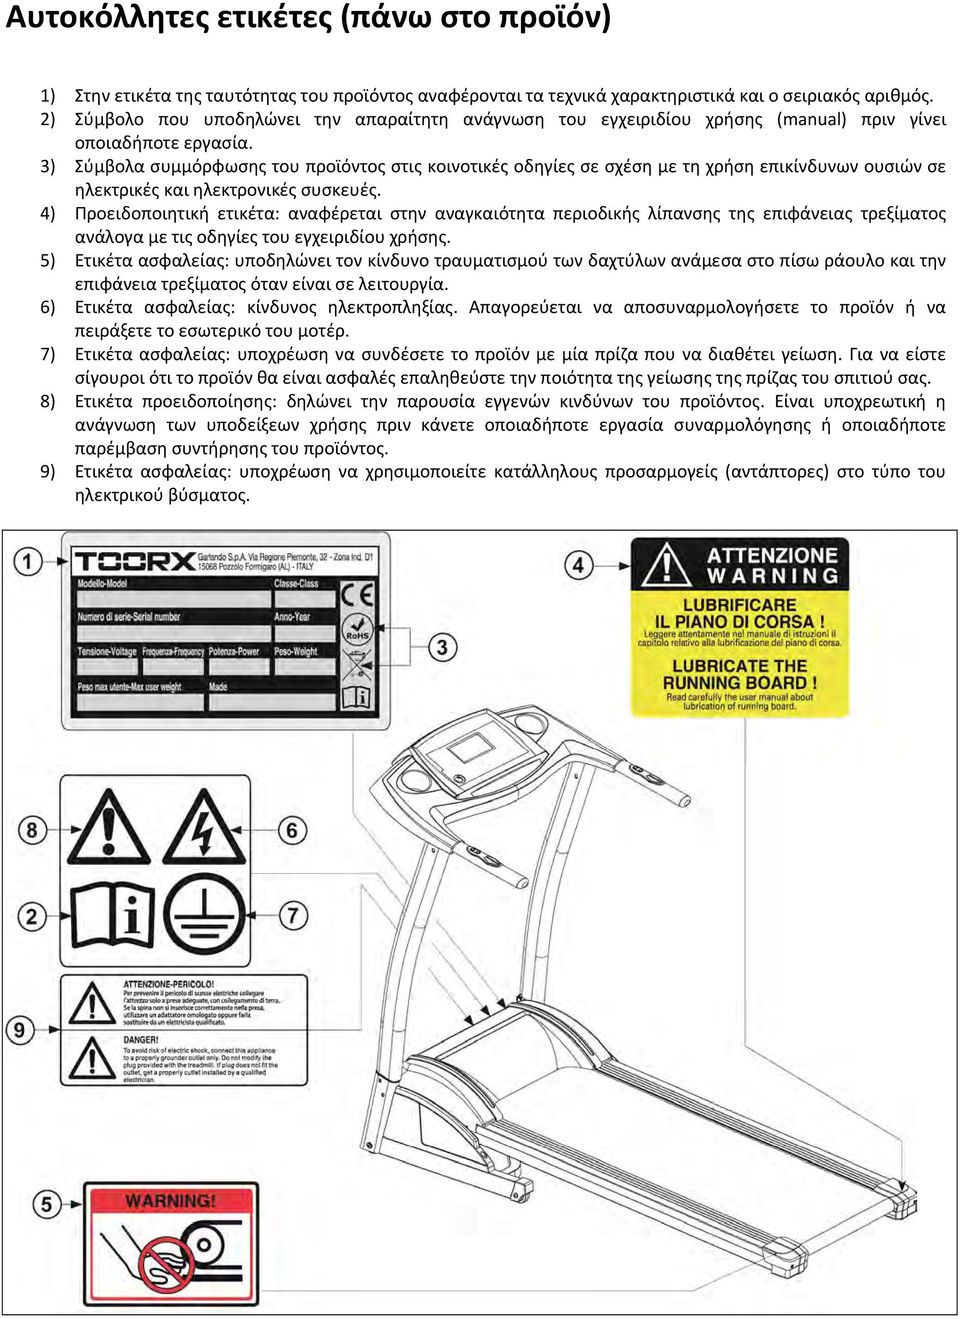 3) Σύμβολα συμμόρφωσης του προϊόντος στις κοινοτικές οδηγίες σε σχέση με τη χρήση επικίνδυνων ουσιών σε ηλεκτρικές και ηλεκτρονικές συσκευές.